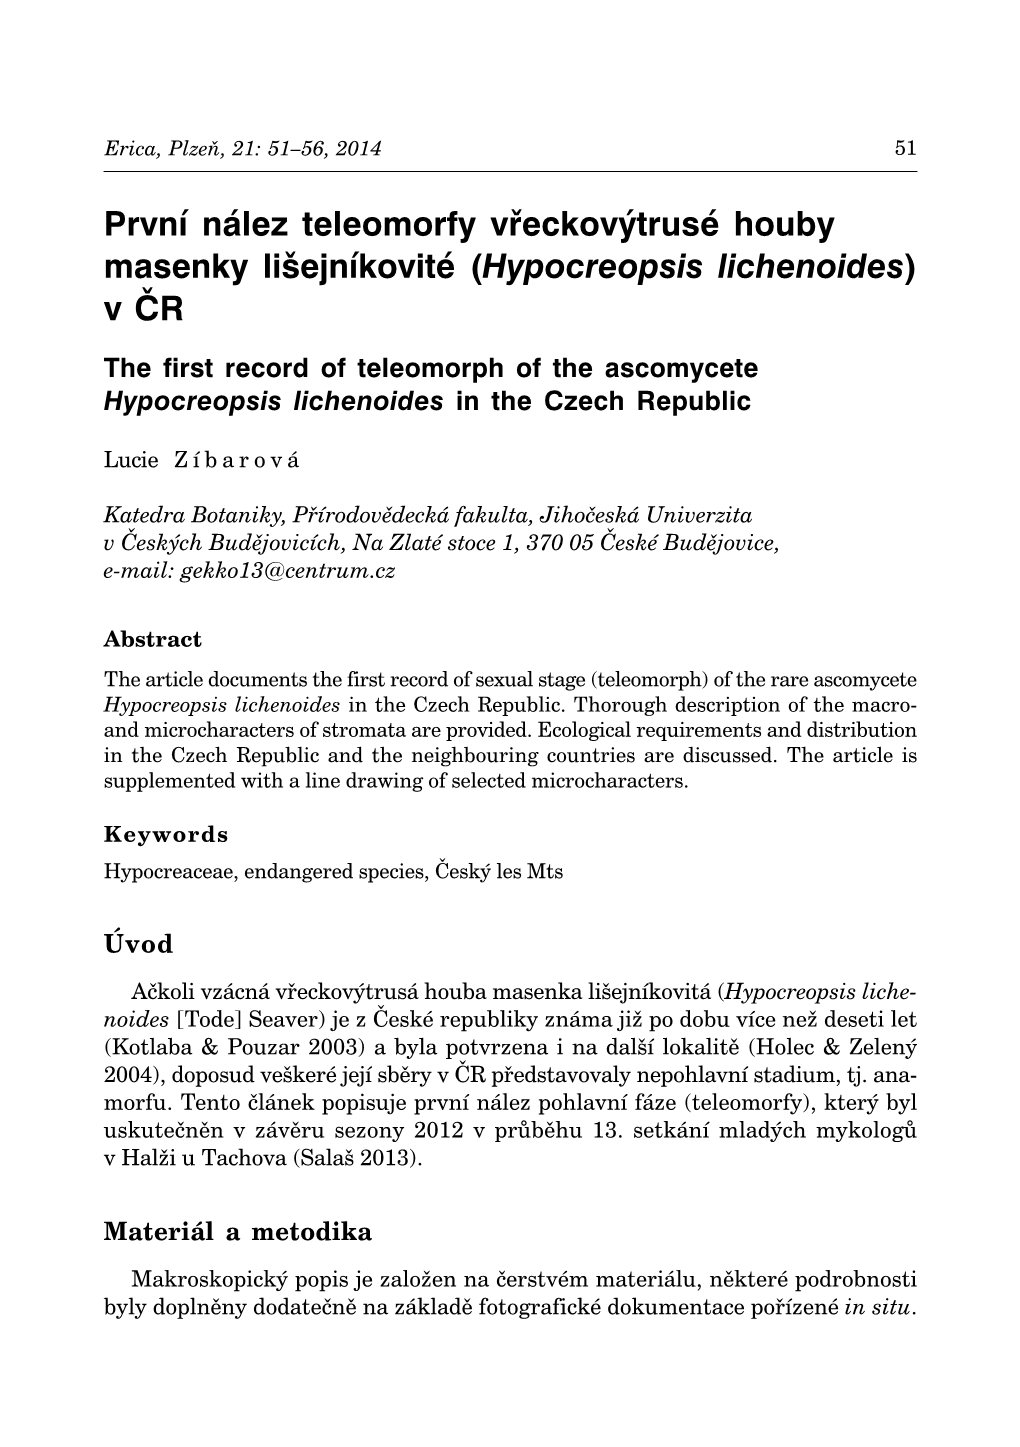 Hypocreopsis Lichenoides) V ČR